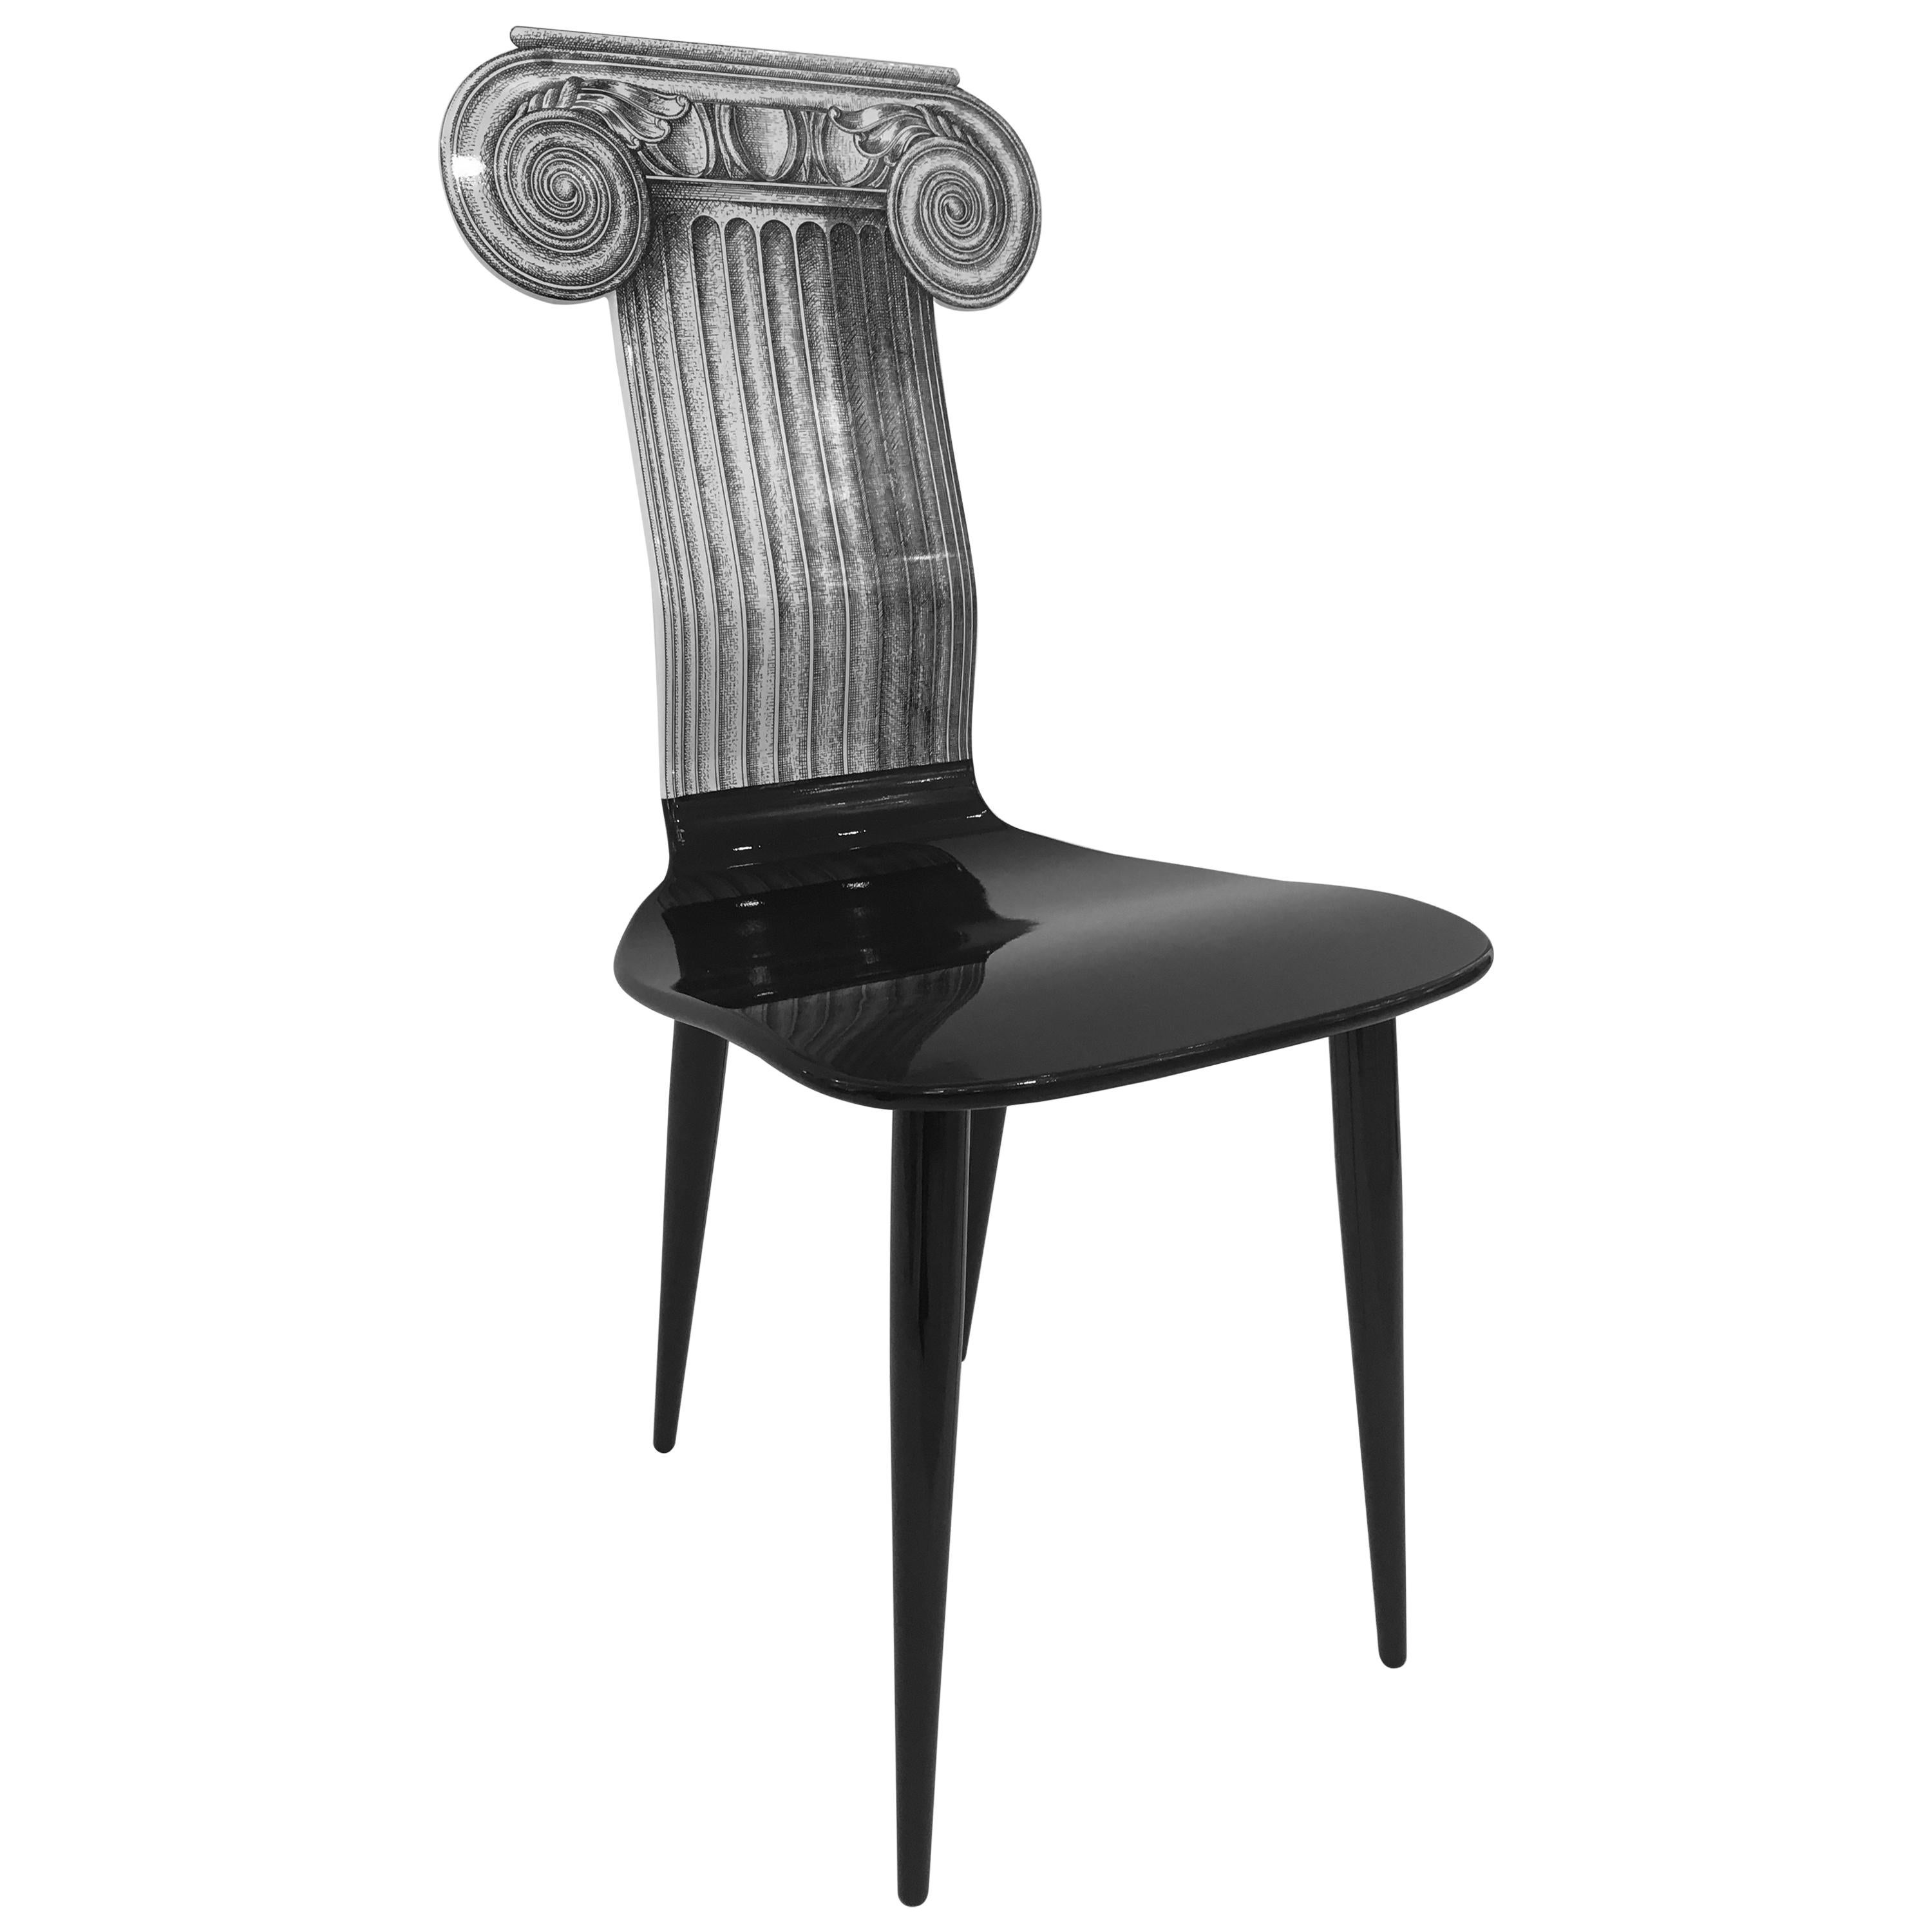 Piero Fornasetti 'Capitello Ionico' Chair in Black and White, Italy, circa 2006